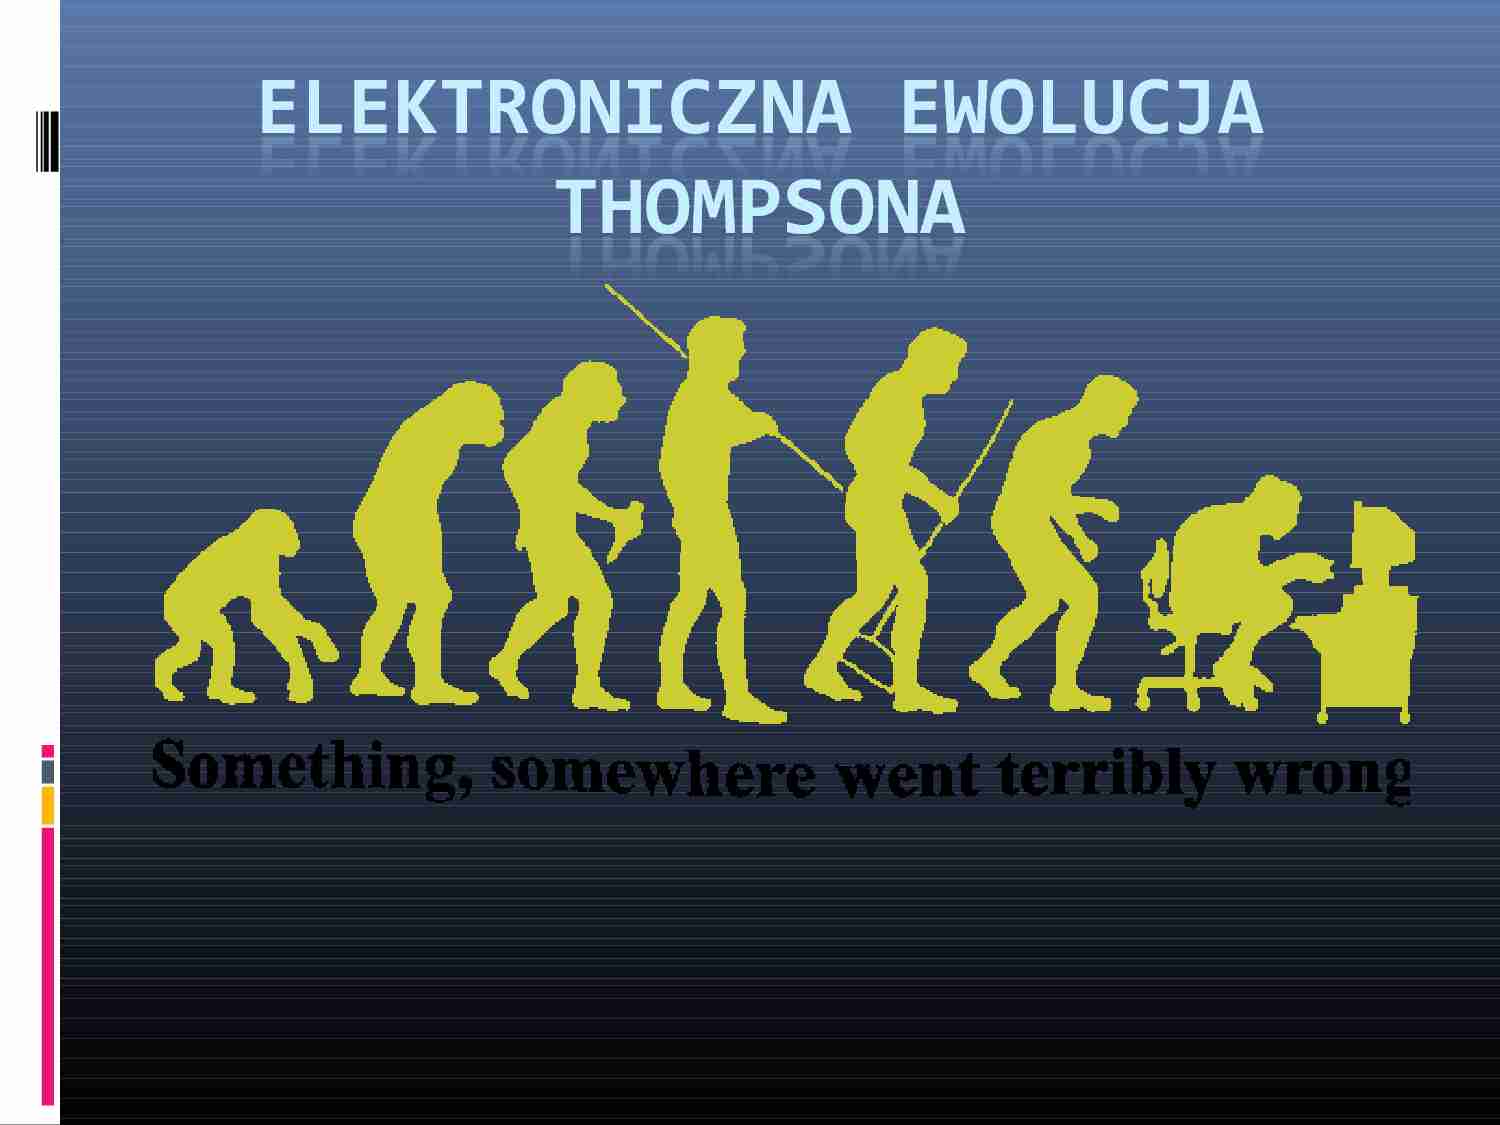 Elektroniczna ewolucja - ewolucjonizm - strona 1